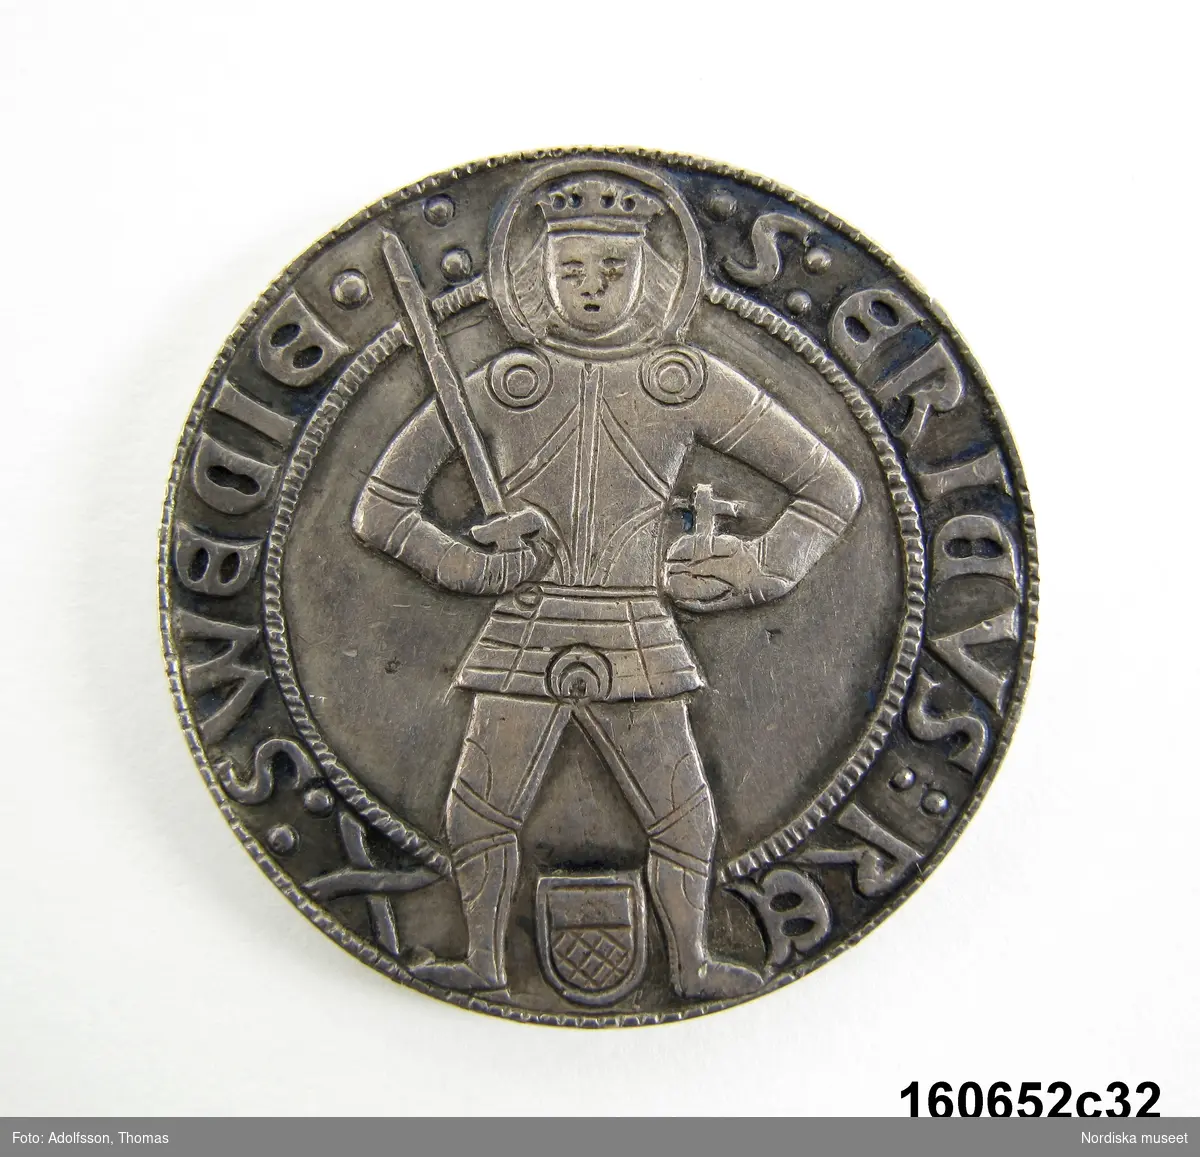 Mynt, sentida kopia av 1 mark utgiven 1512 av Sten Sture den yngre.